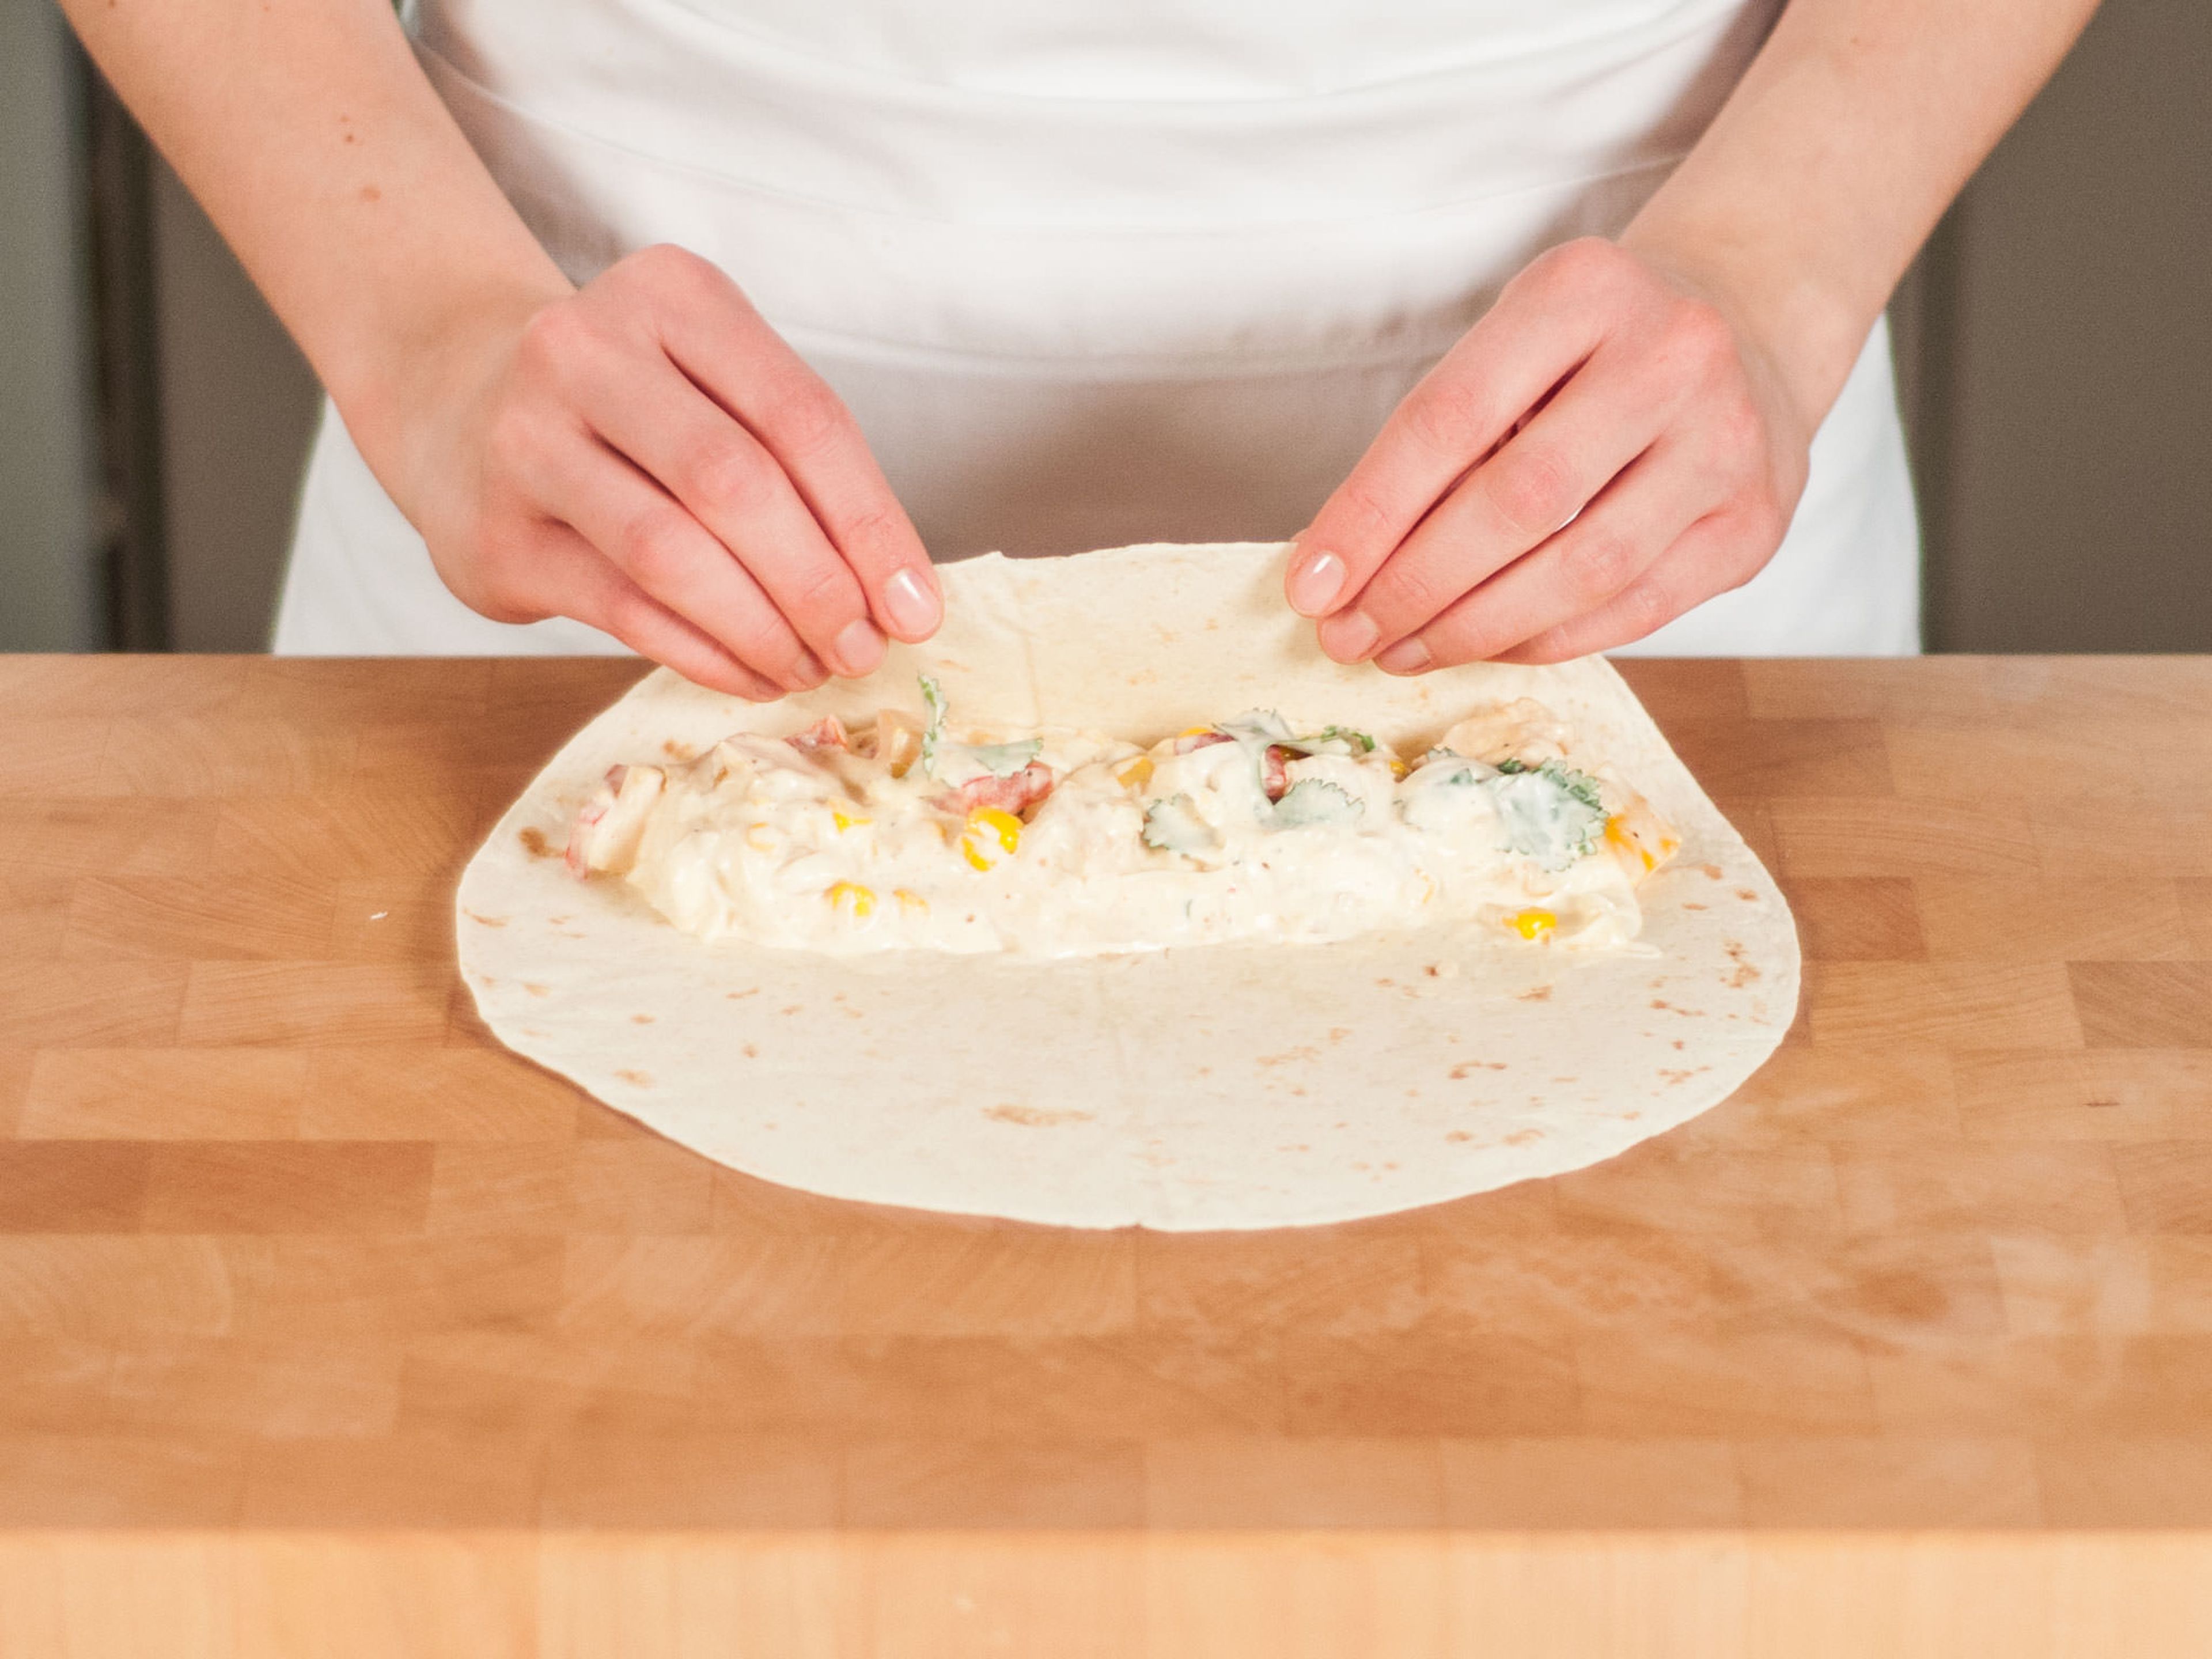 Tortillas befüllen und fest einrollen. Dann die zusammengerollten Enchiladas in einer Auflaufform anordnen. Mit dem restlichen Käse bestreuen und im Backofen bei 160°C ca. 8 – 10 Min. überbacken, bis der Käse geschmolzen ist. Sofort genießen!